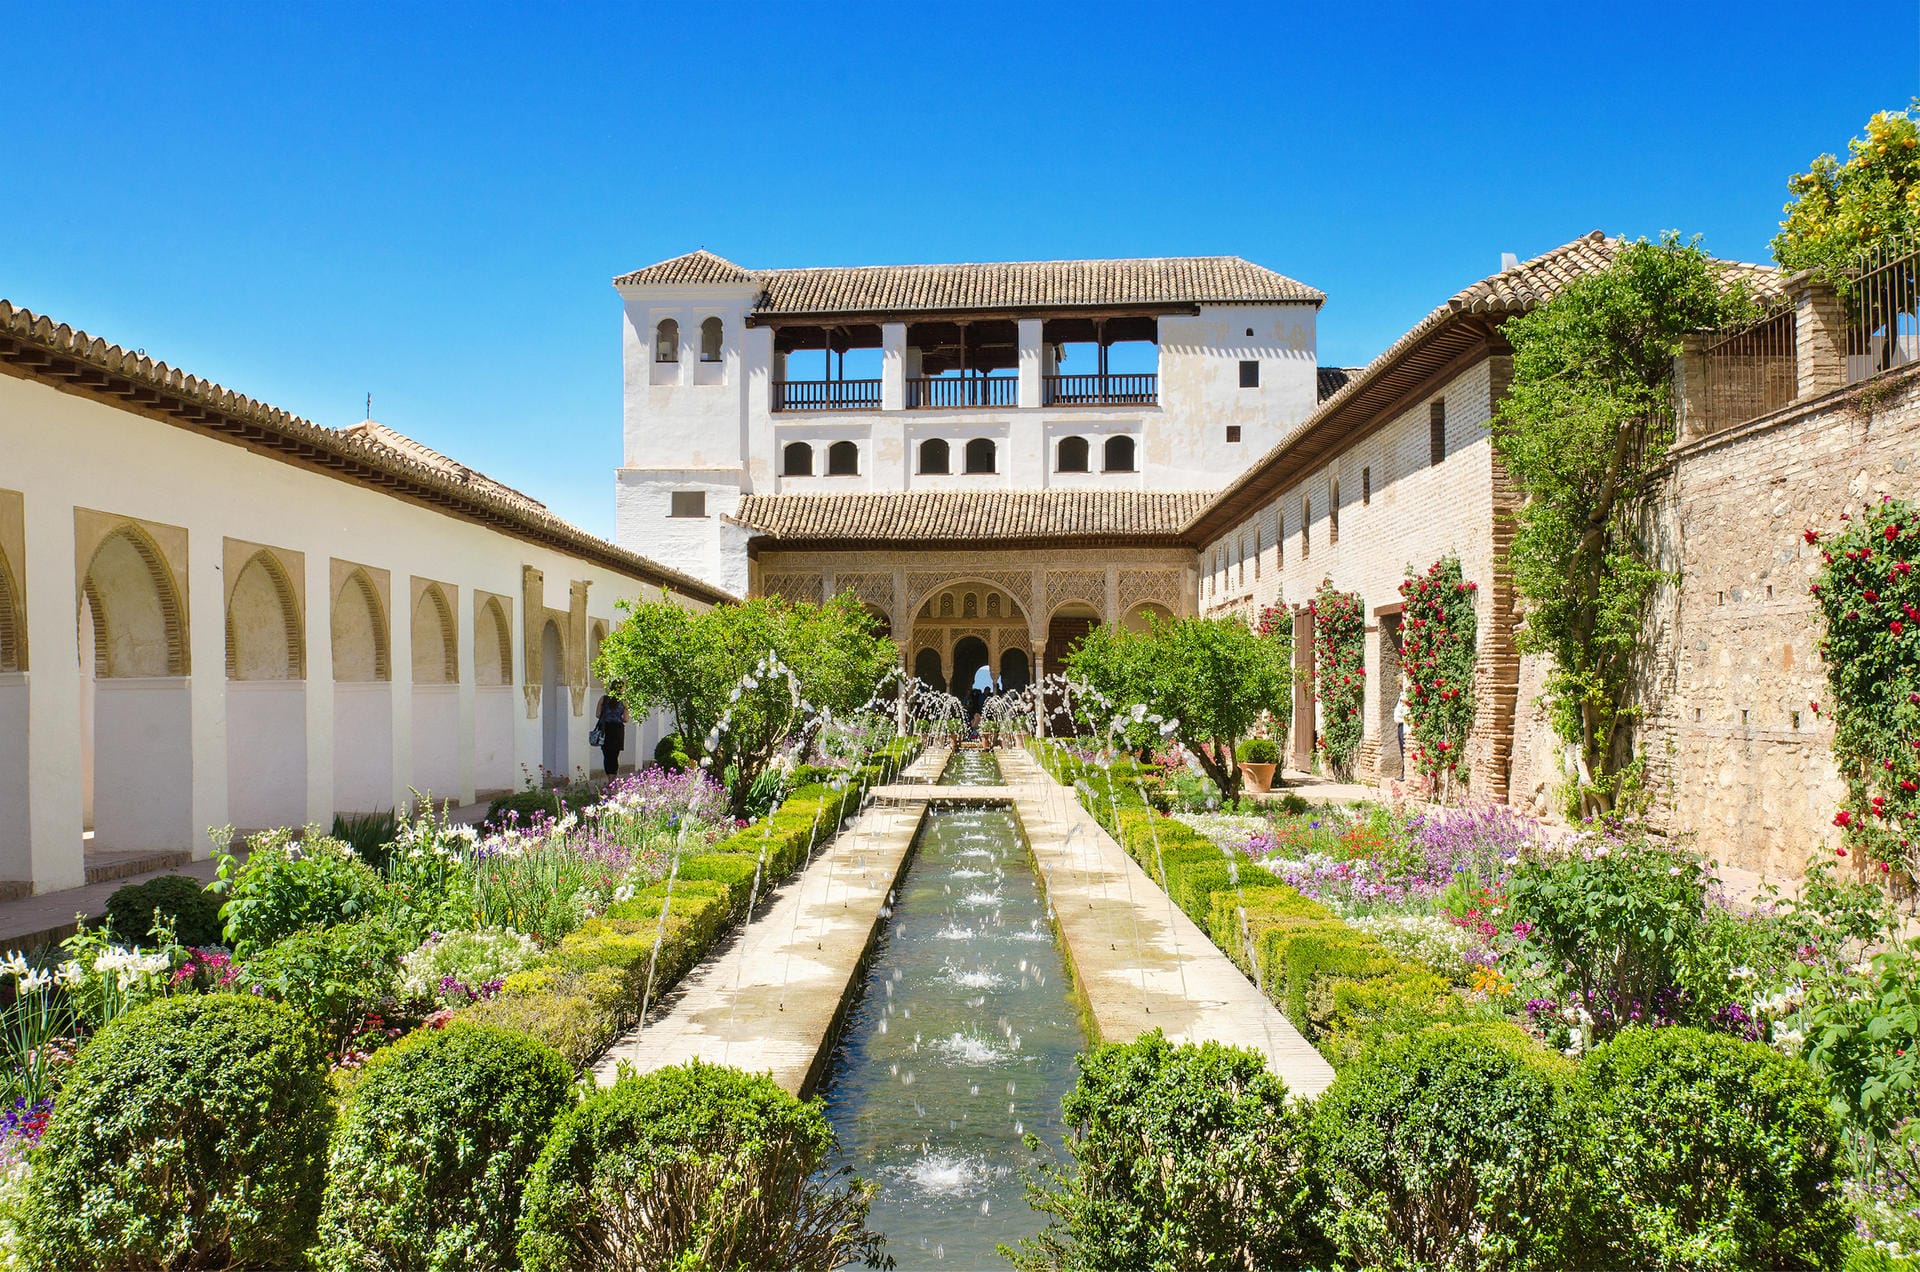 Andalusien ist berühmt für seine maurischen Paläste. Während die Sommermonate in Andalusien sehr heiß werden, laden die milden Temperaturen des Frühjahrs zur Erkundung der Architektur in Sevilla, Granada und Córdoba ein.